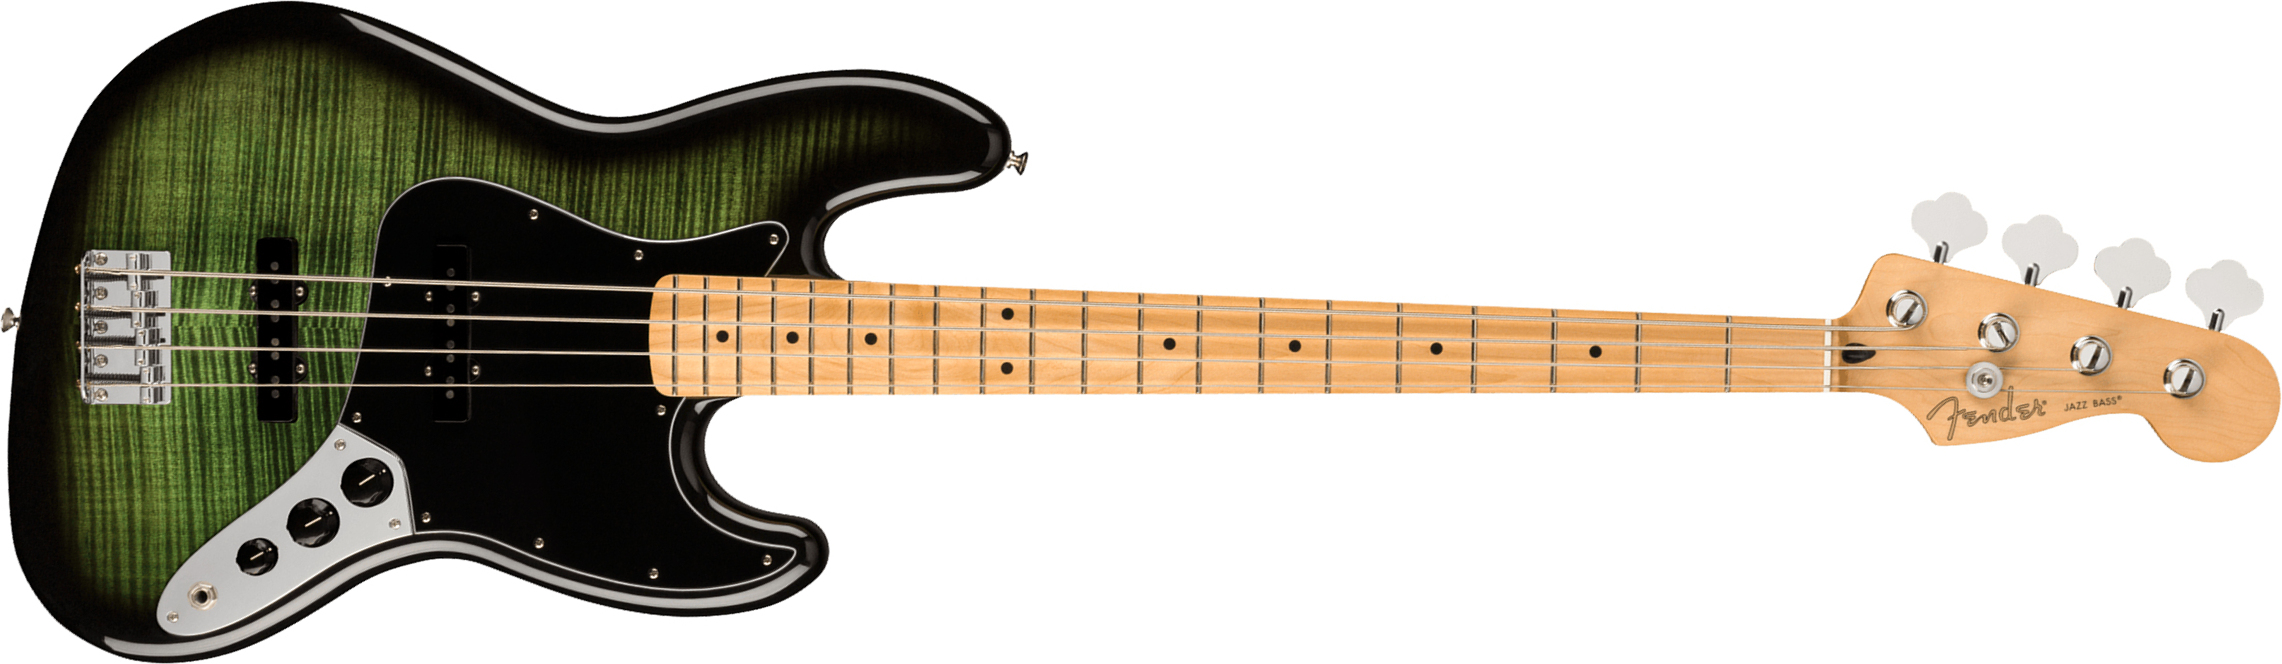 Fender Jazz Bass Player Plus Top Mex Mn - Green Burst - Solid body elektrische bas - Main picture